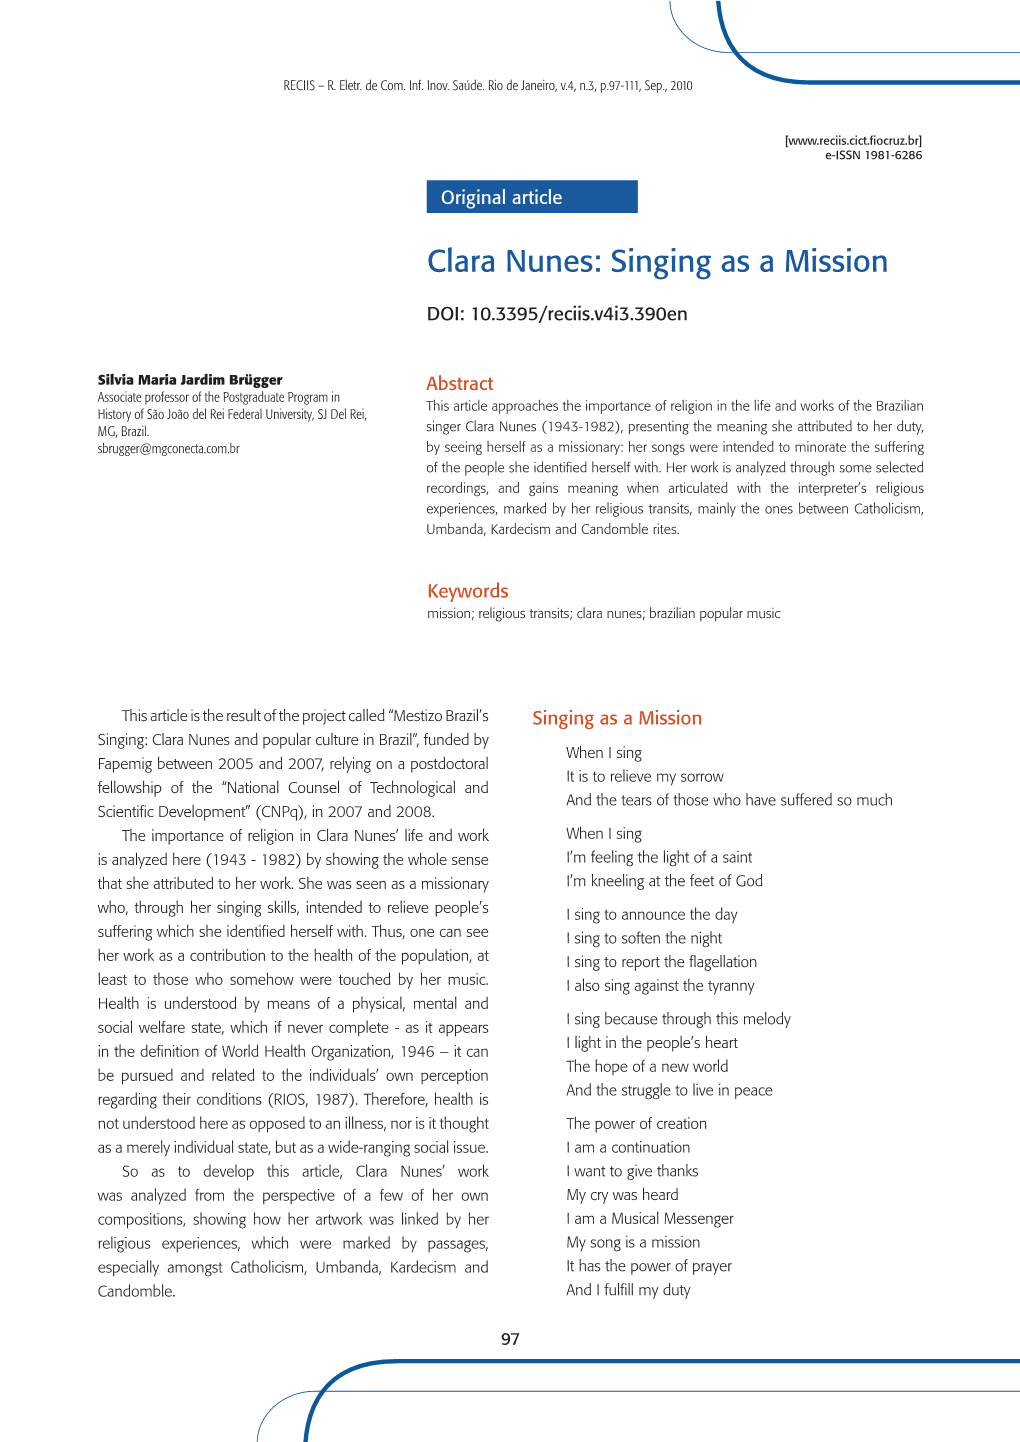 Clara Nunes: Singing As a Mission